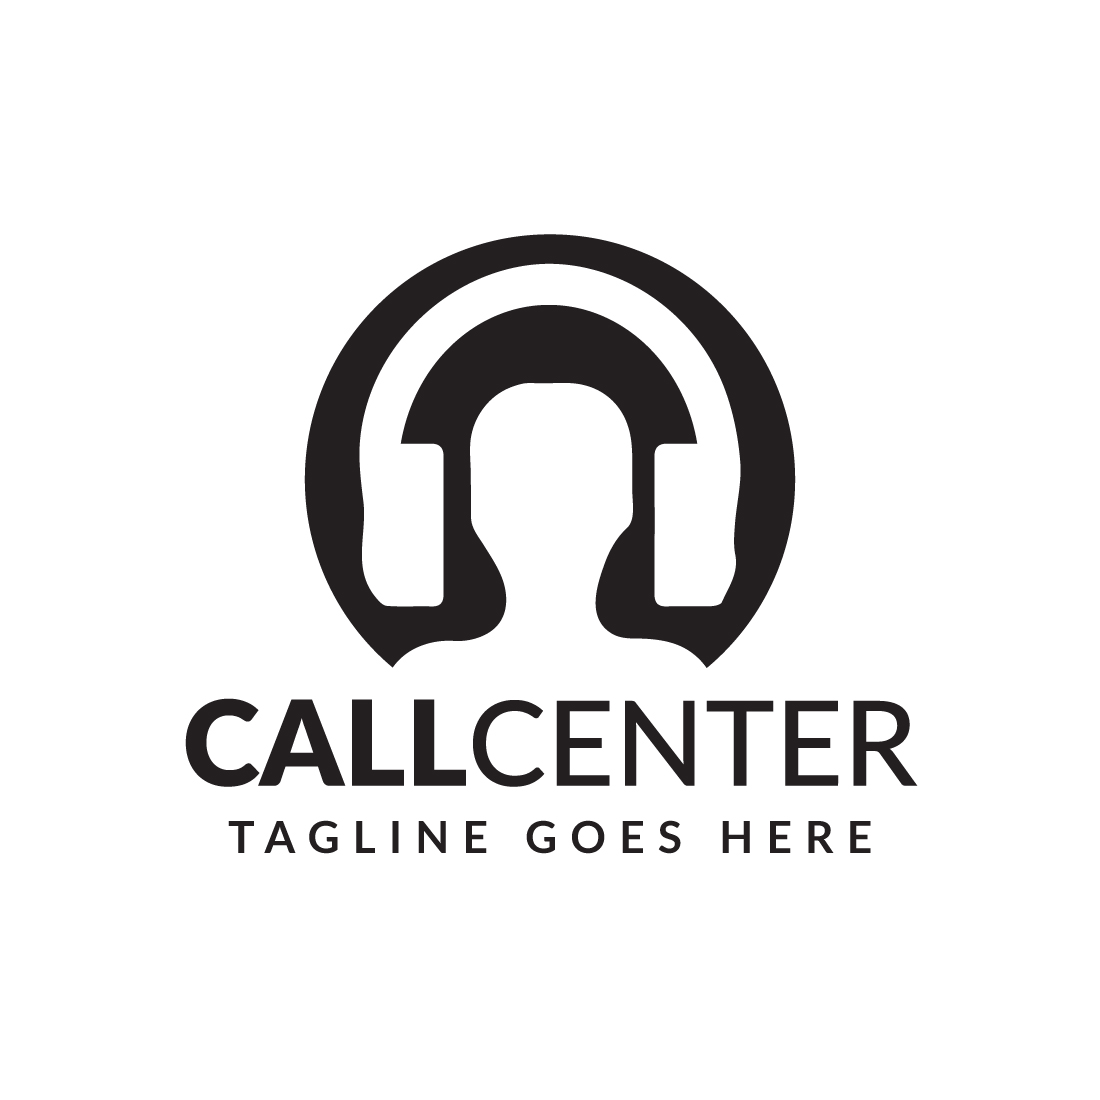 Call Center or customer logo, call logo, customer logo, head phones logo preview image.